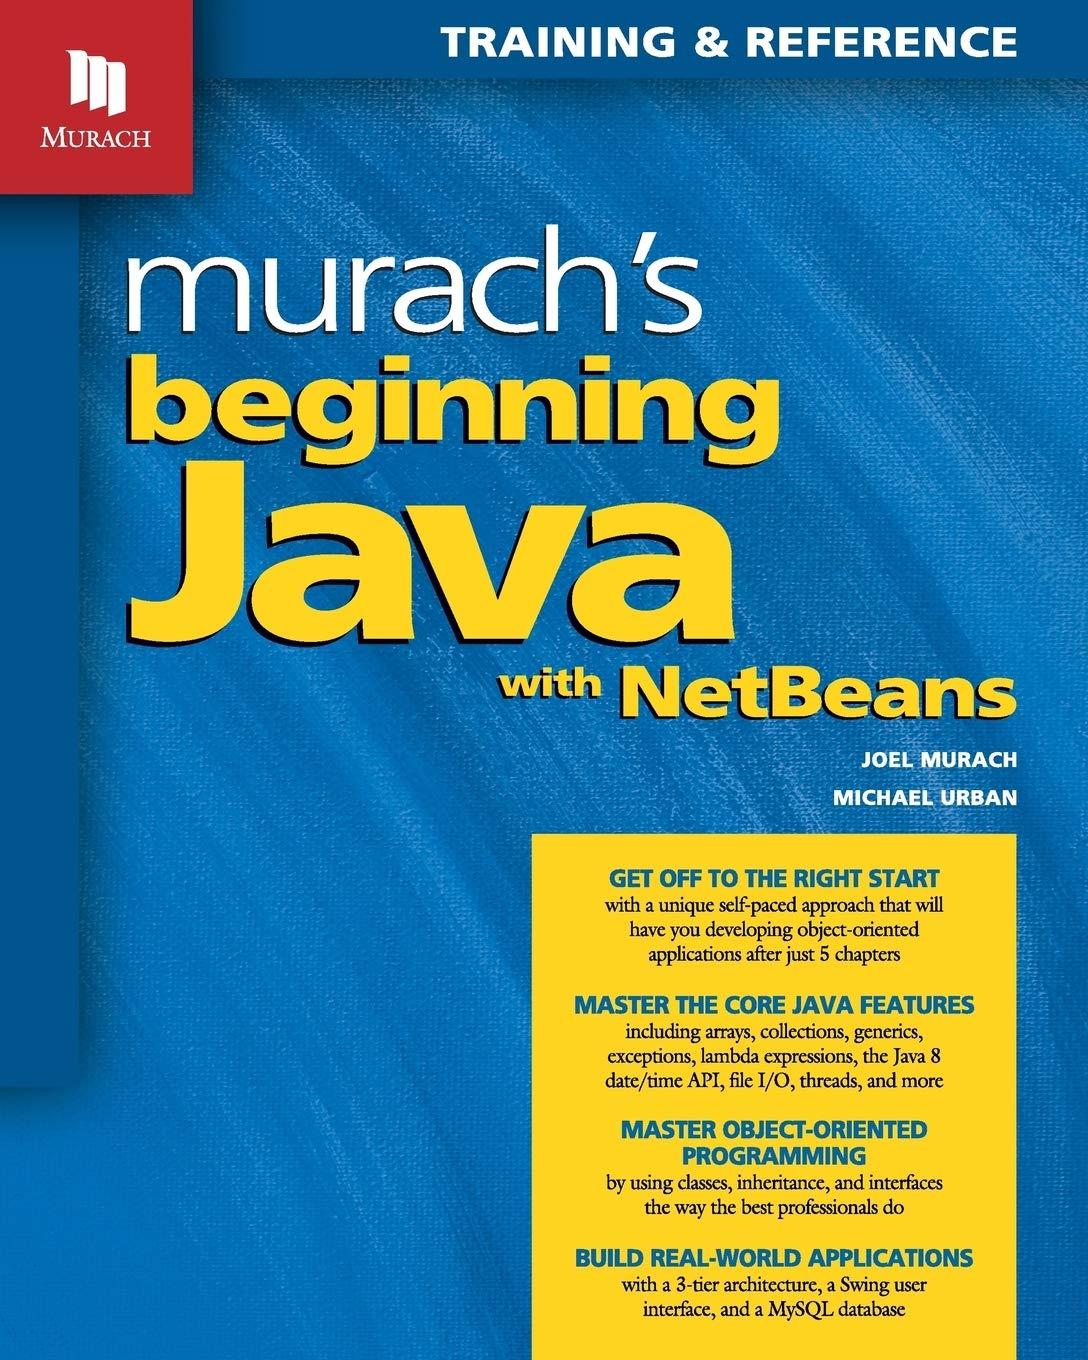 murach's beginning java with netbeans 1st edition joel murach, michael urban 1890774847, 978-1890774844